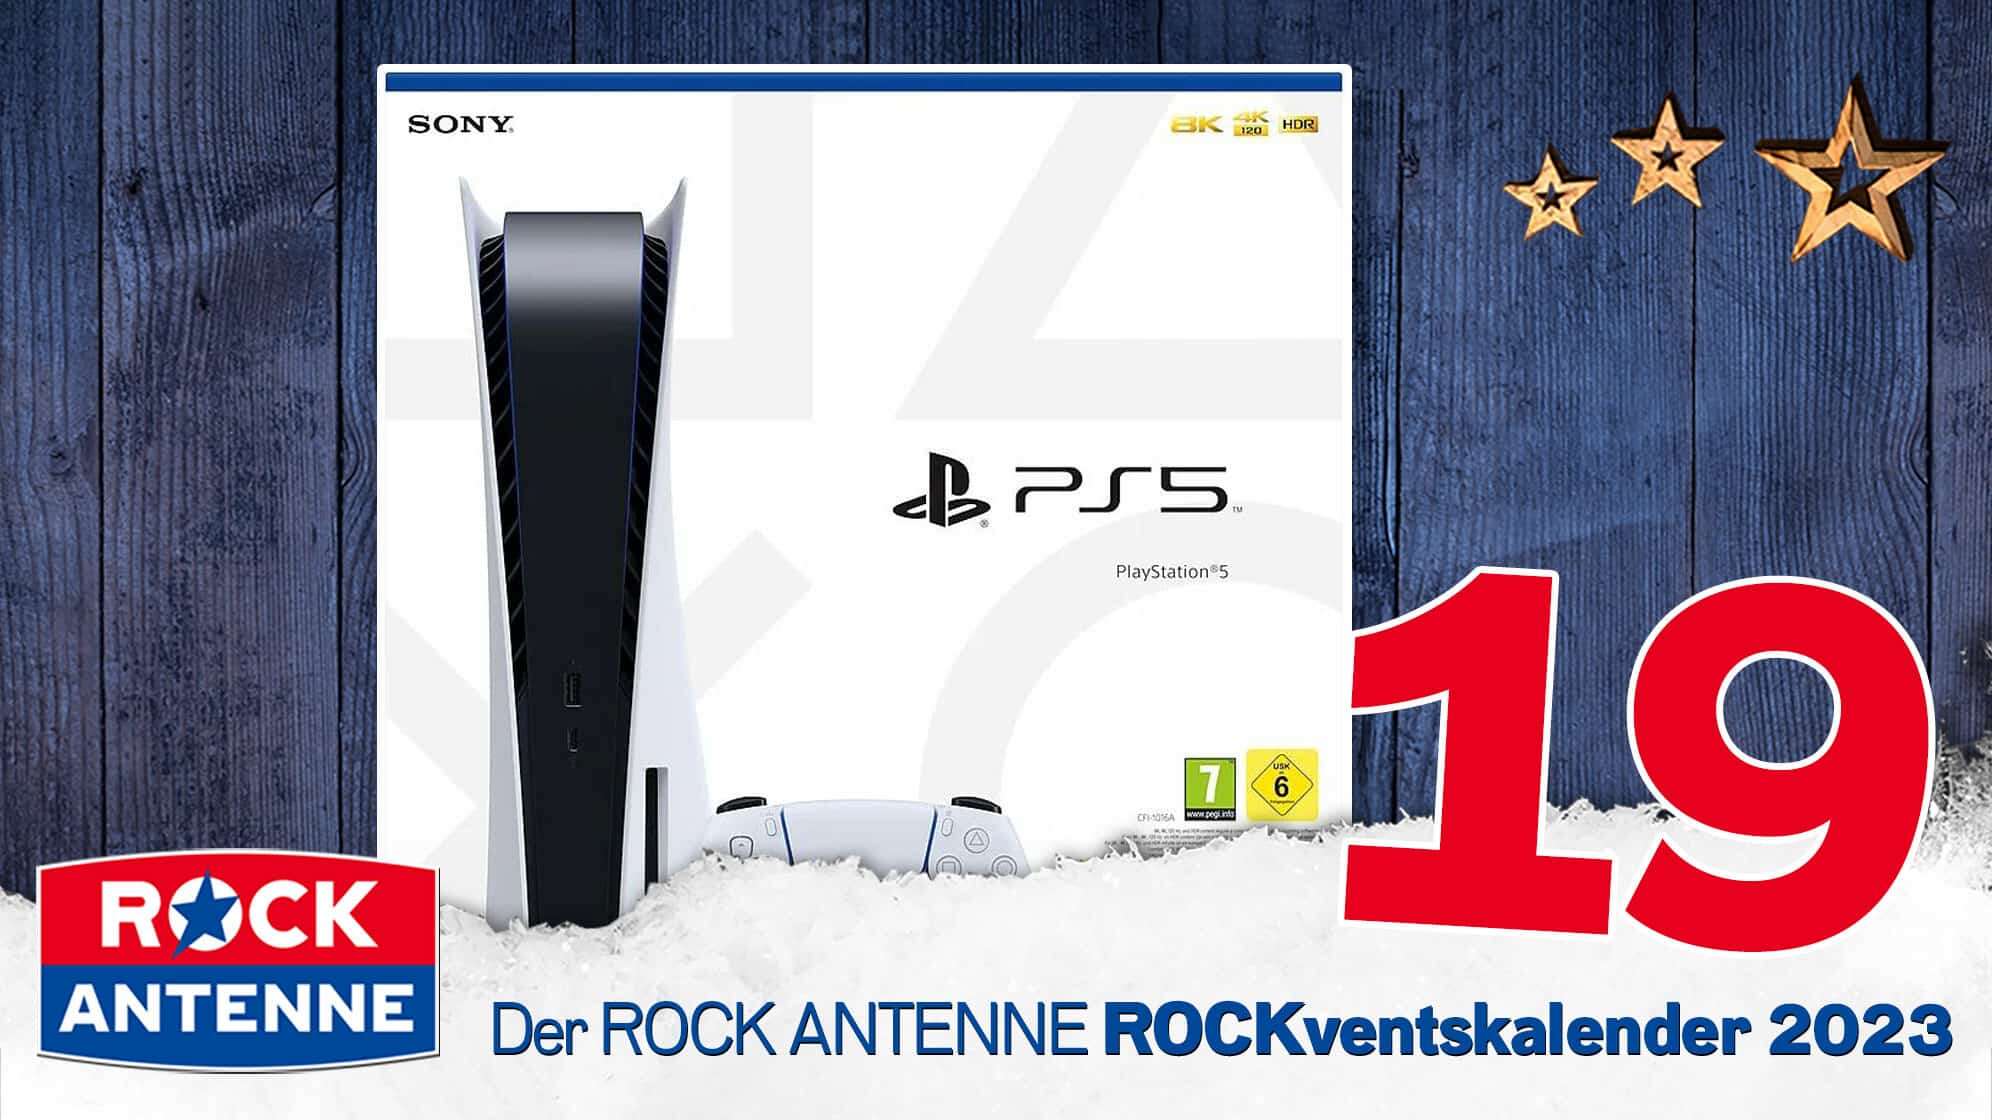 ROCK ANTENNE ROCKventskalender Türchen 19: Eine Playstation 5 Konsole von Sony